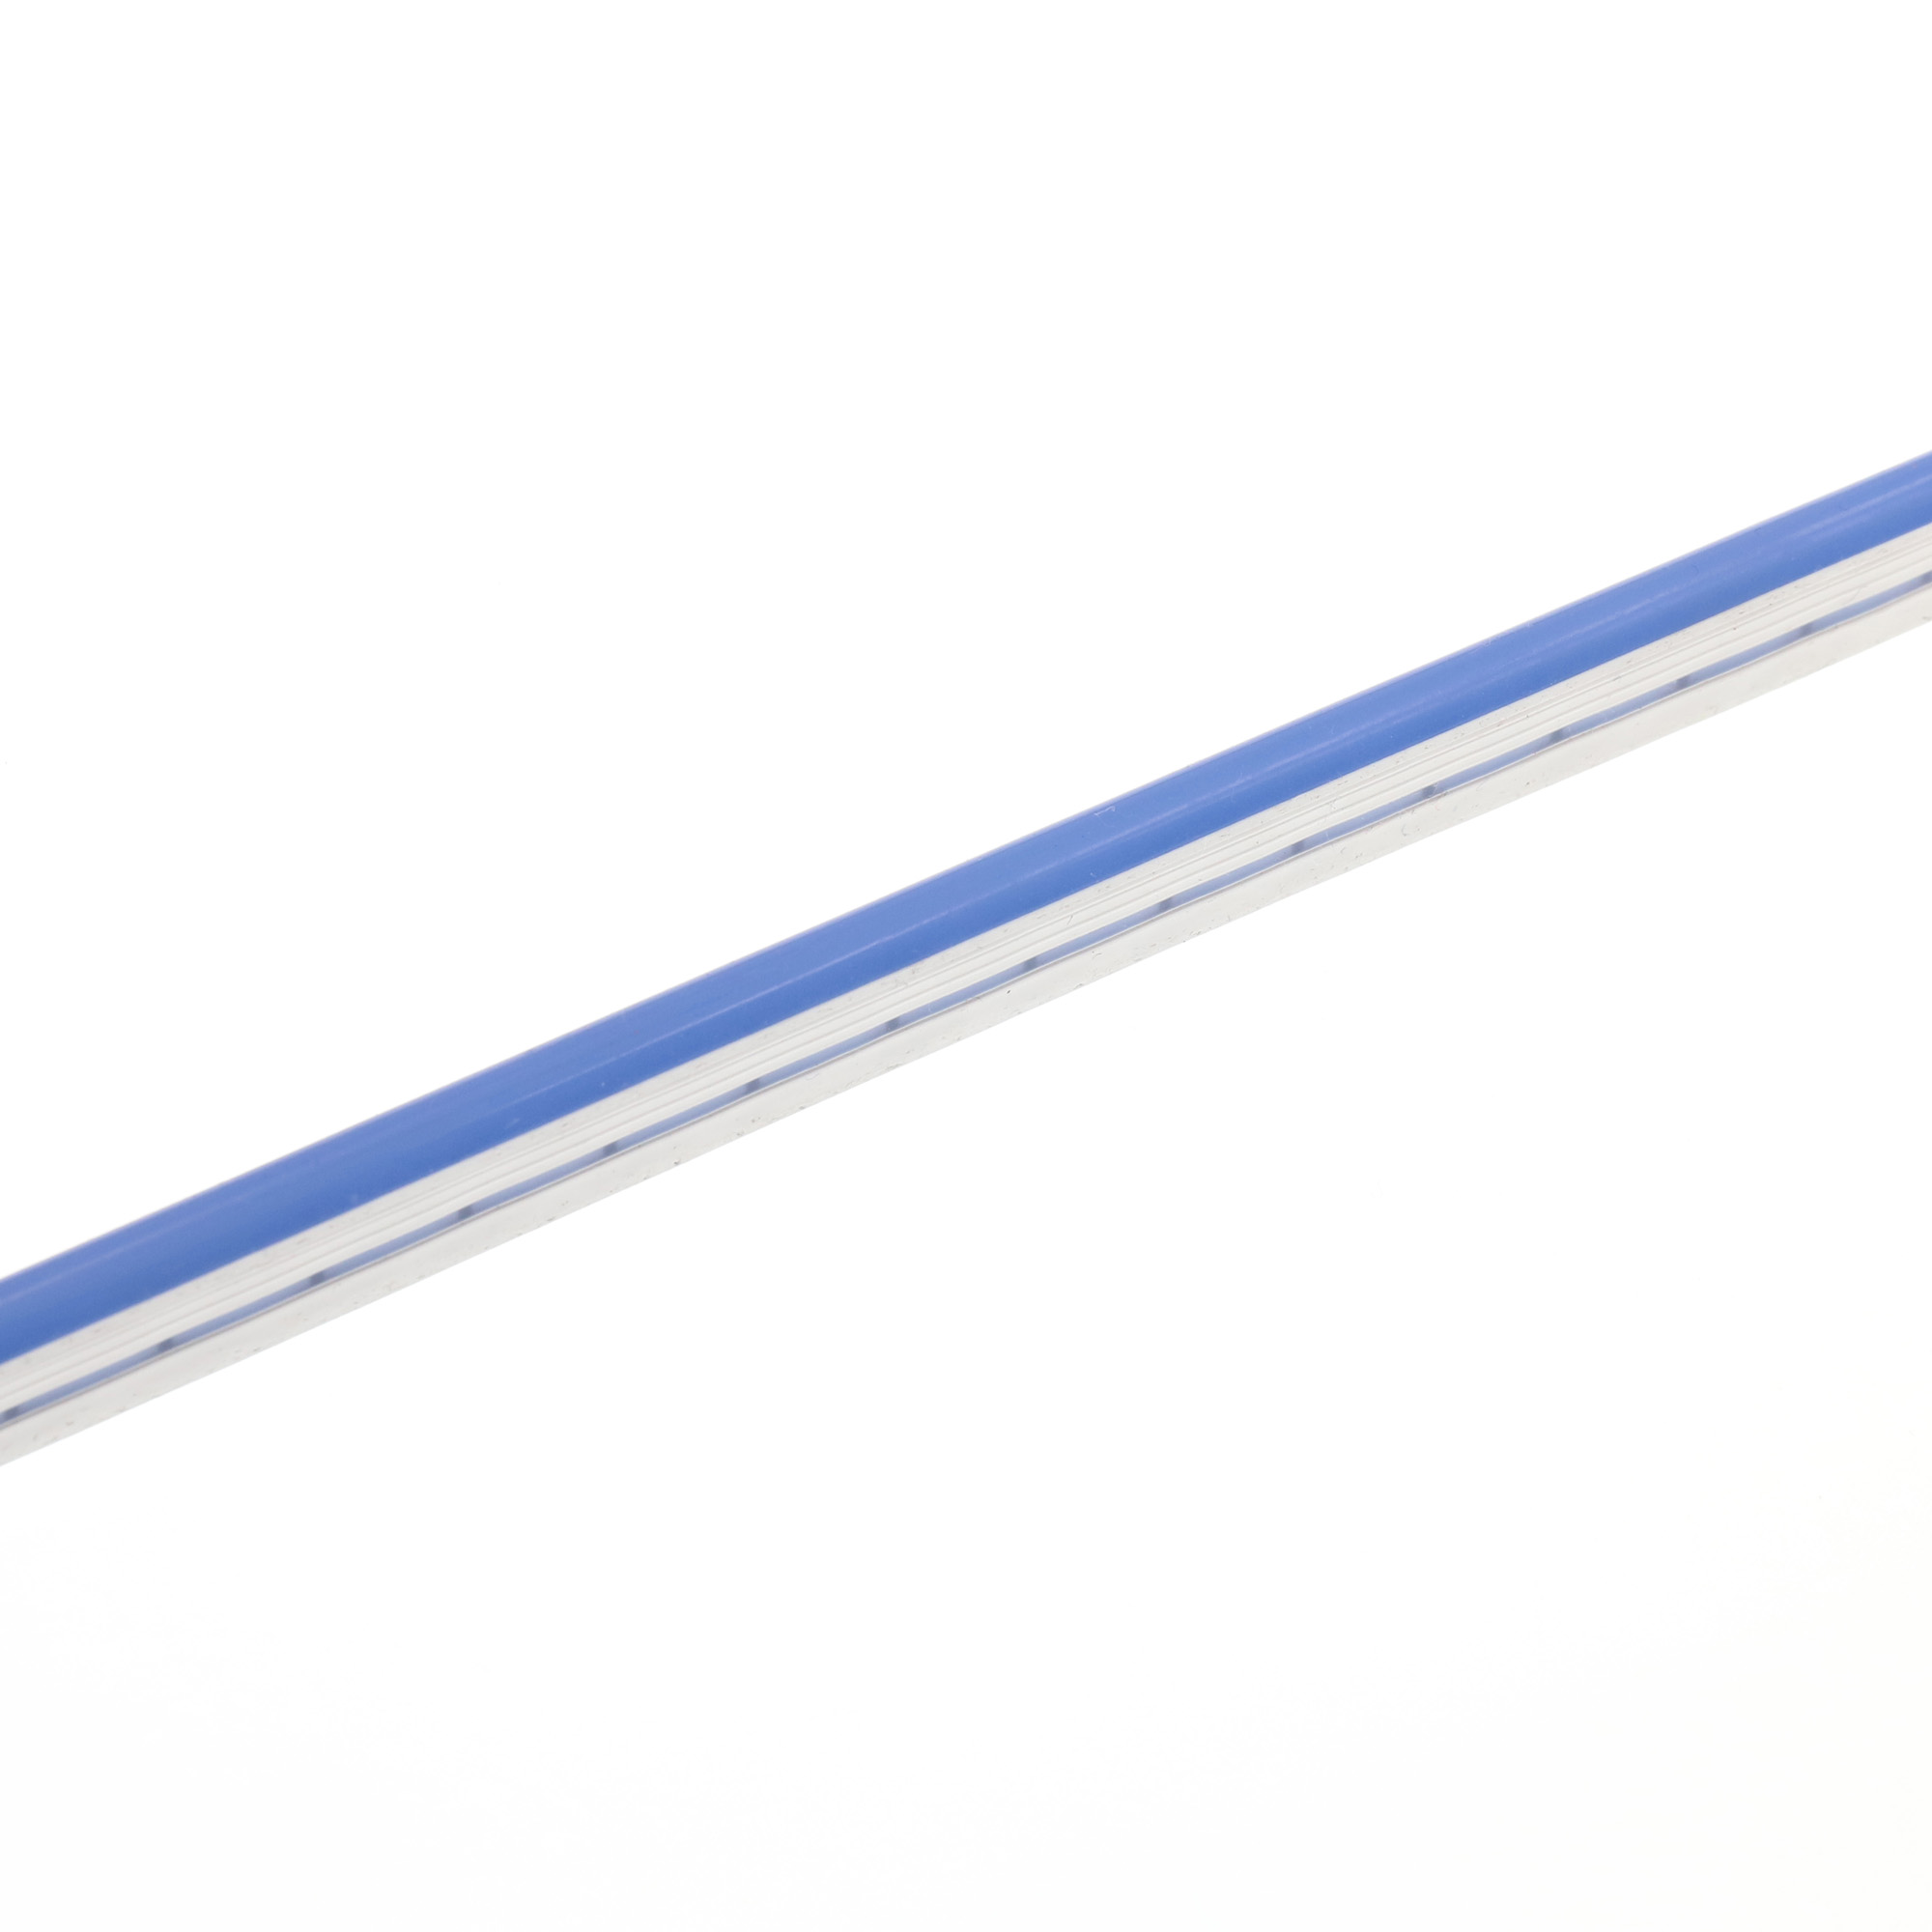 Étui flexible en silicone pour la conversion des bandes LED en néon -  16x16mm - 5 mètres - Courbure latérale